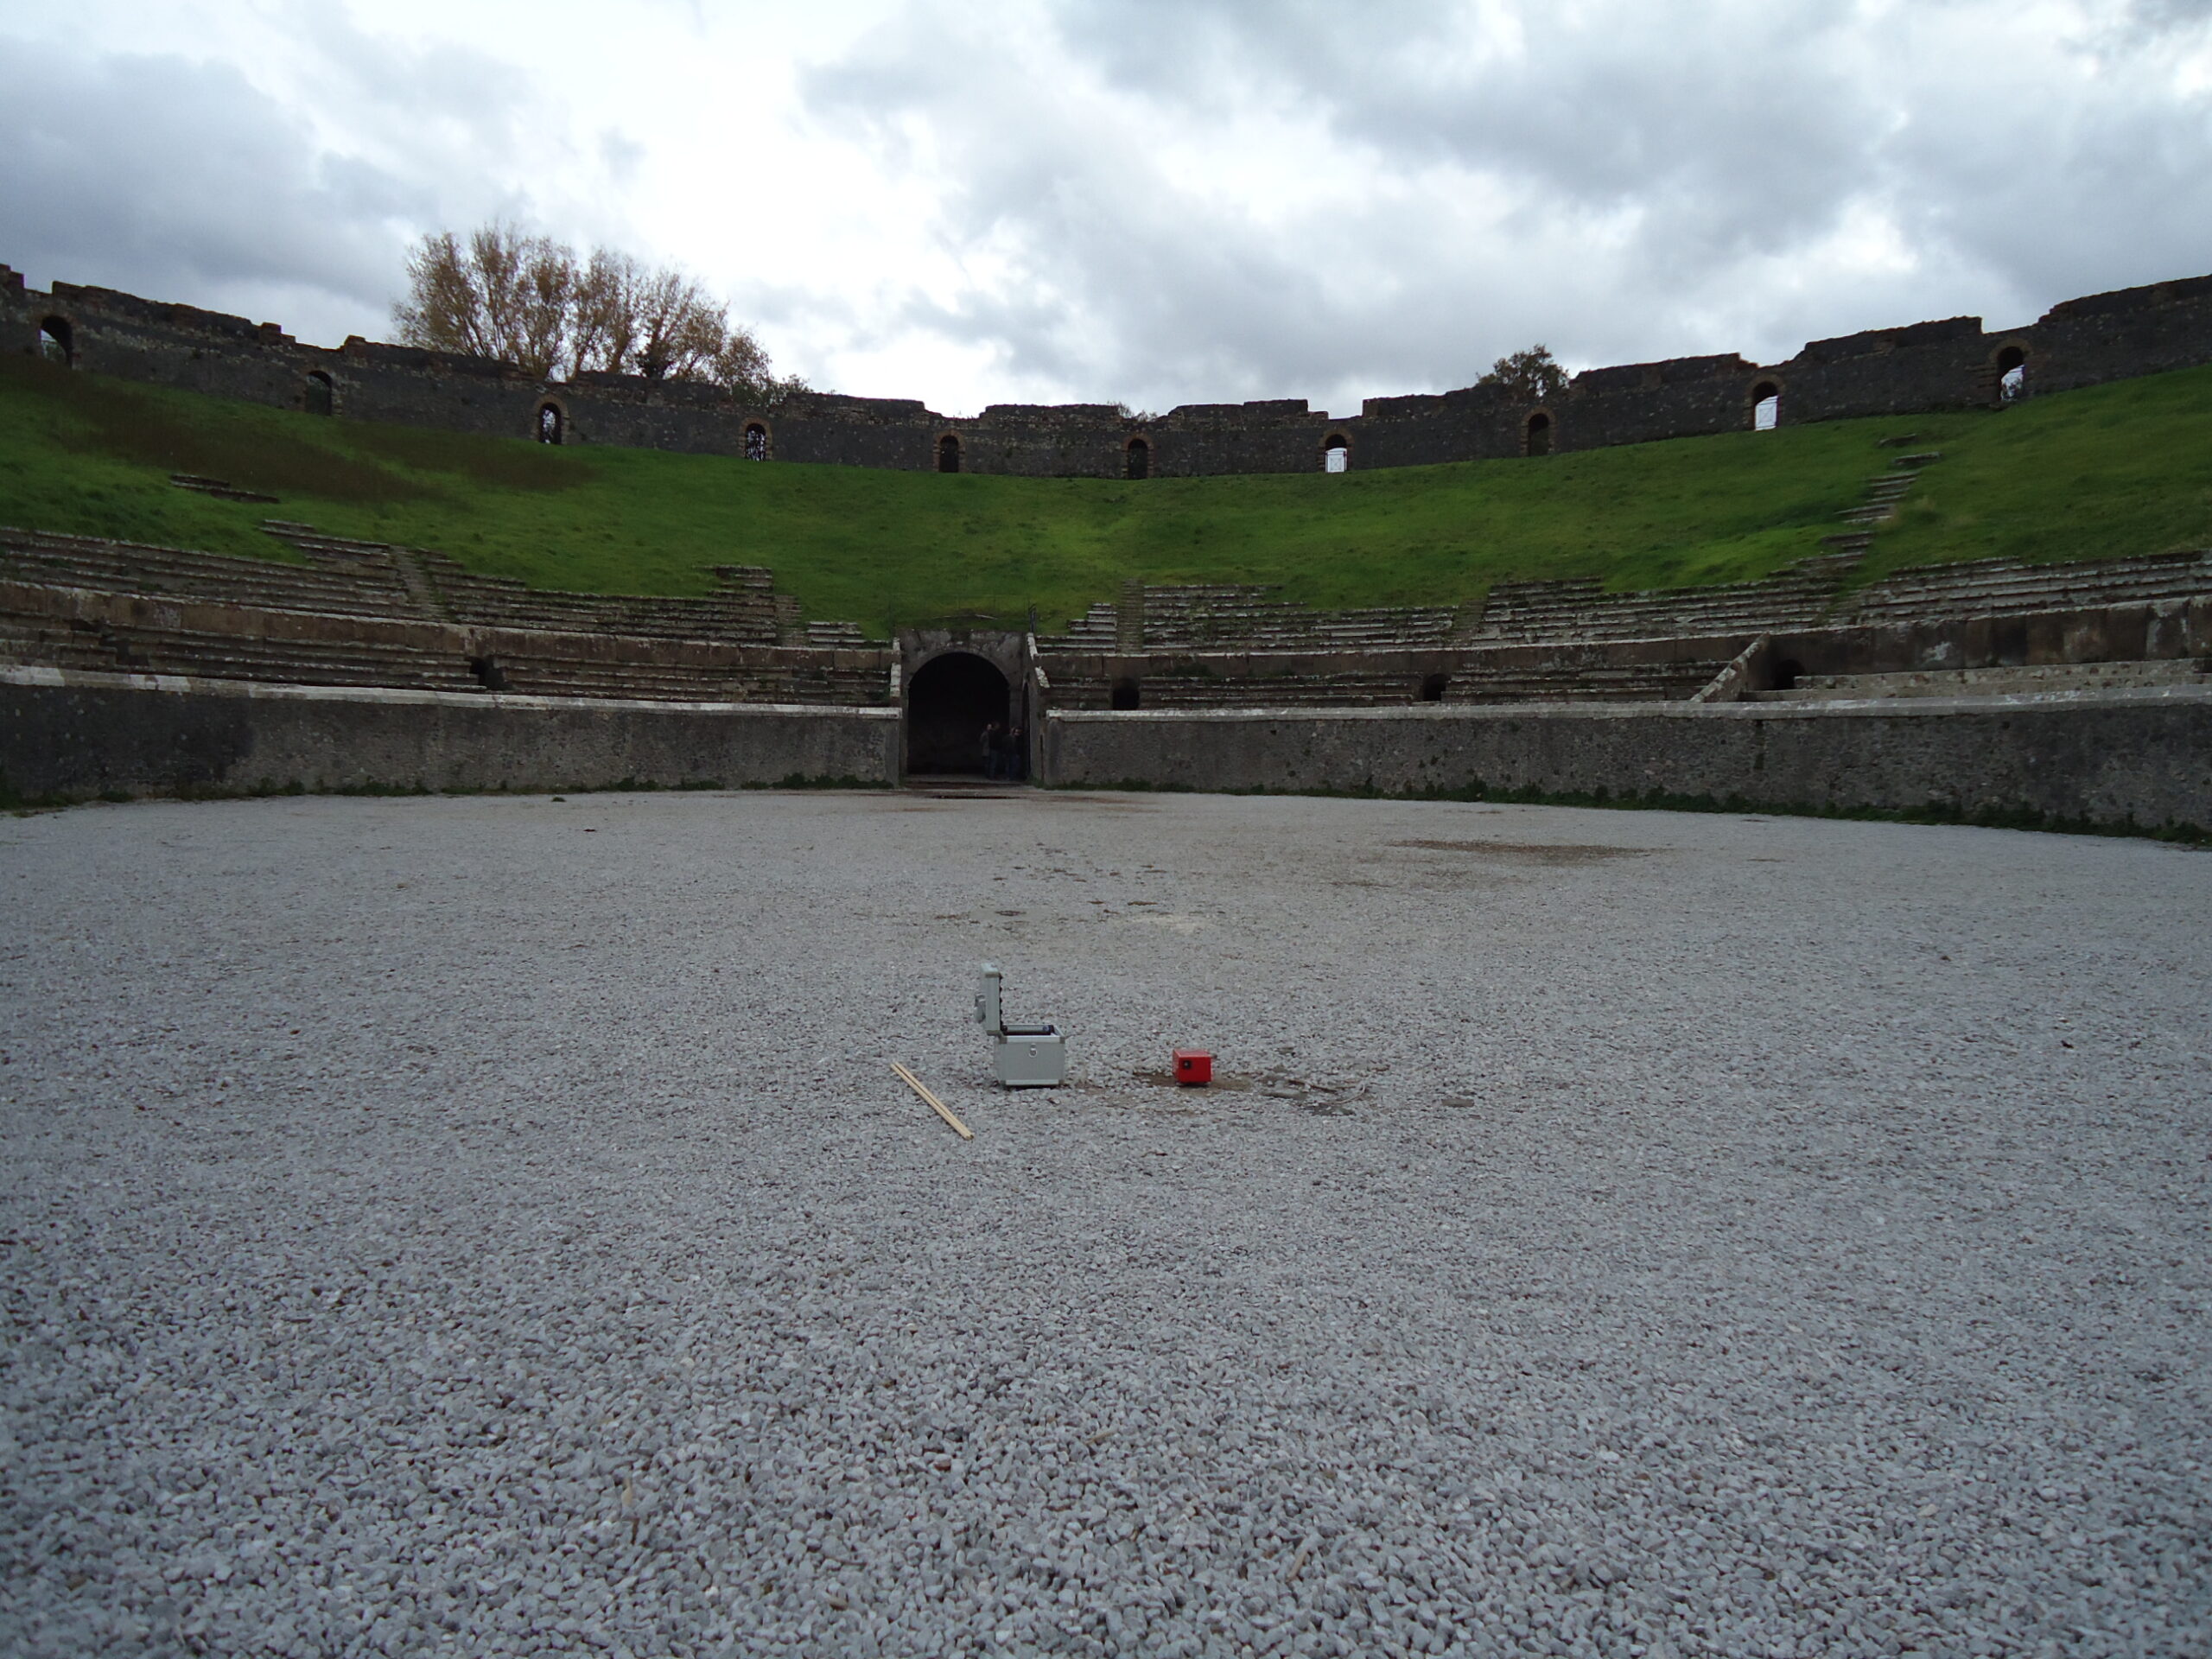 Misura delle vibrazioni ambientali tramite stazione singola nel sito archeologico di Pompei